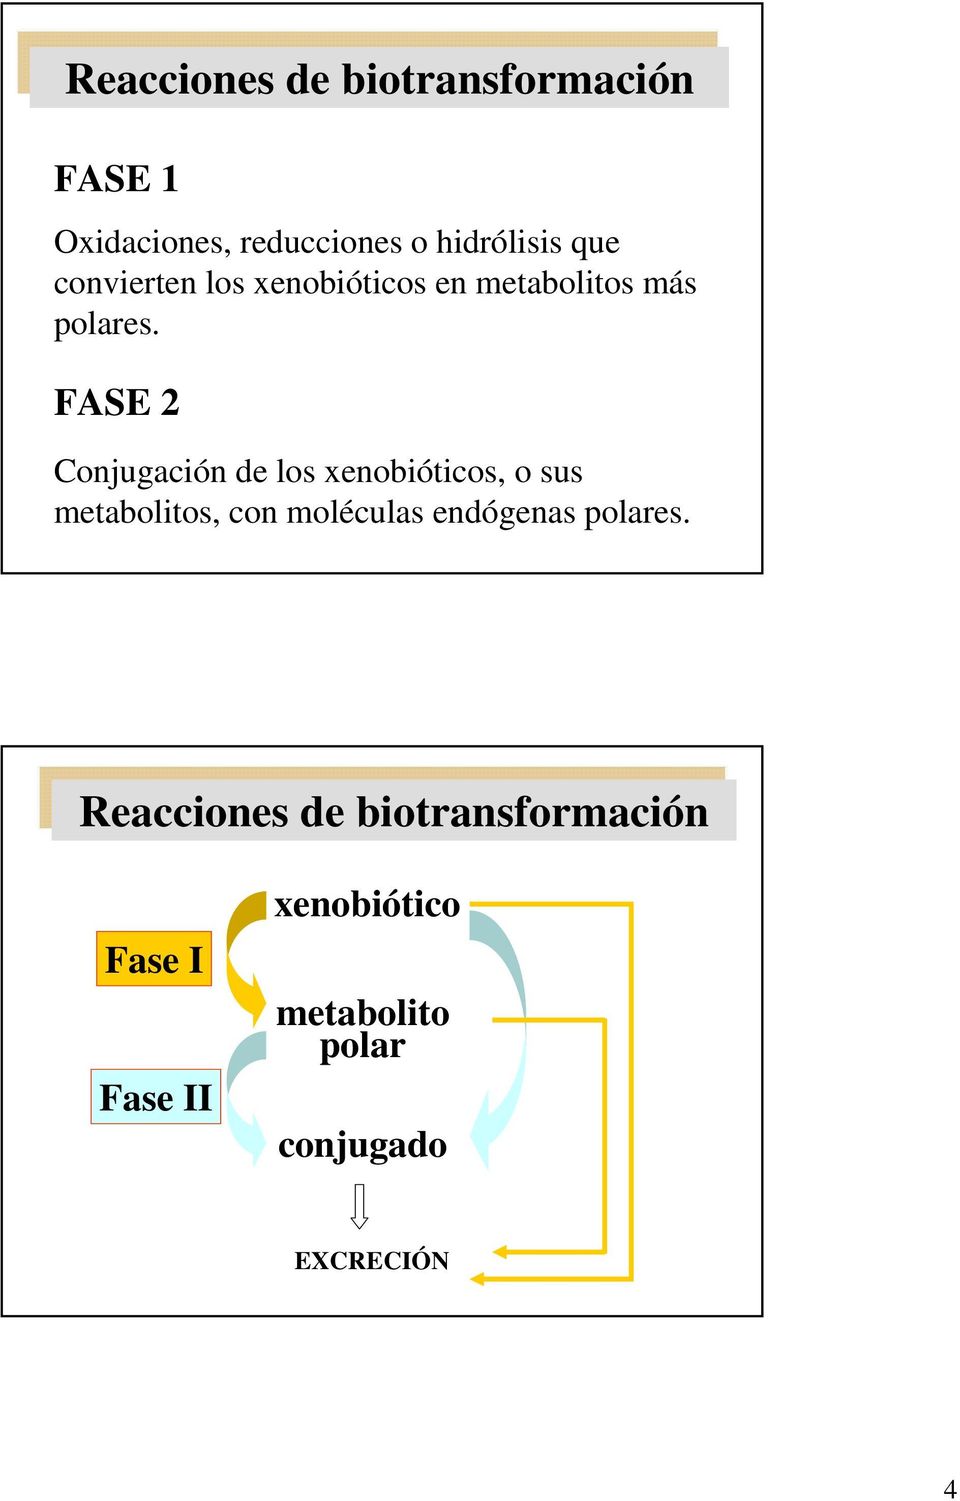 FAE 2 Conjugación de los xenobióticos, o sus metabolitos, con moléculas endógenas polares.